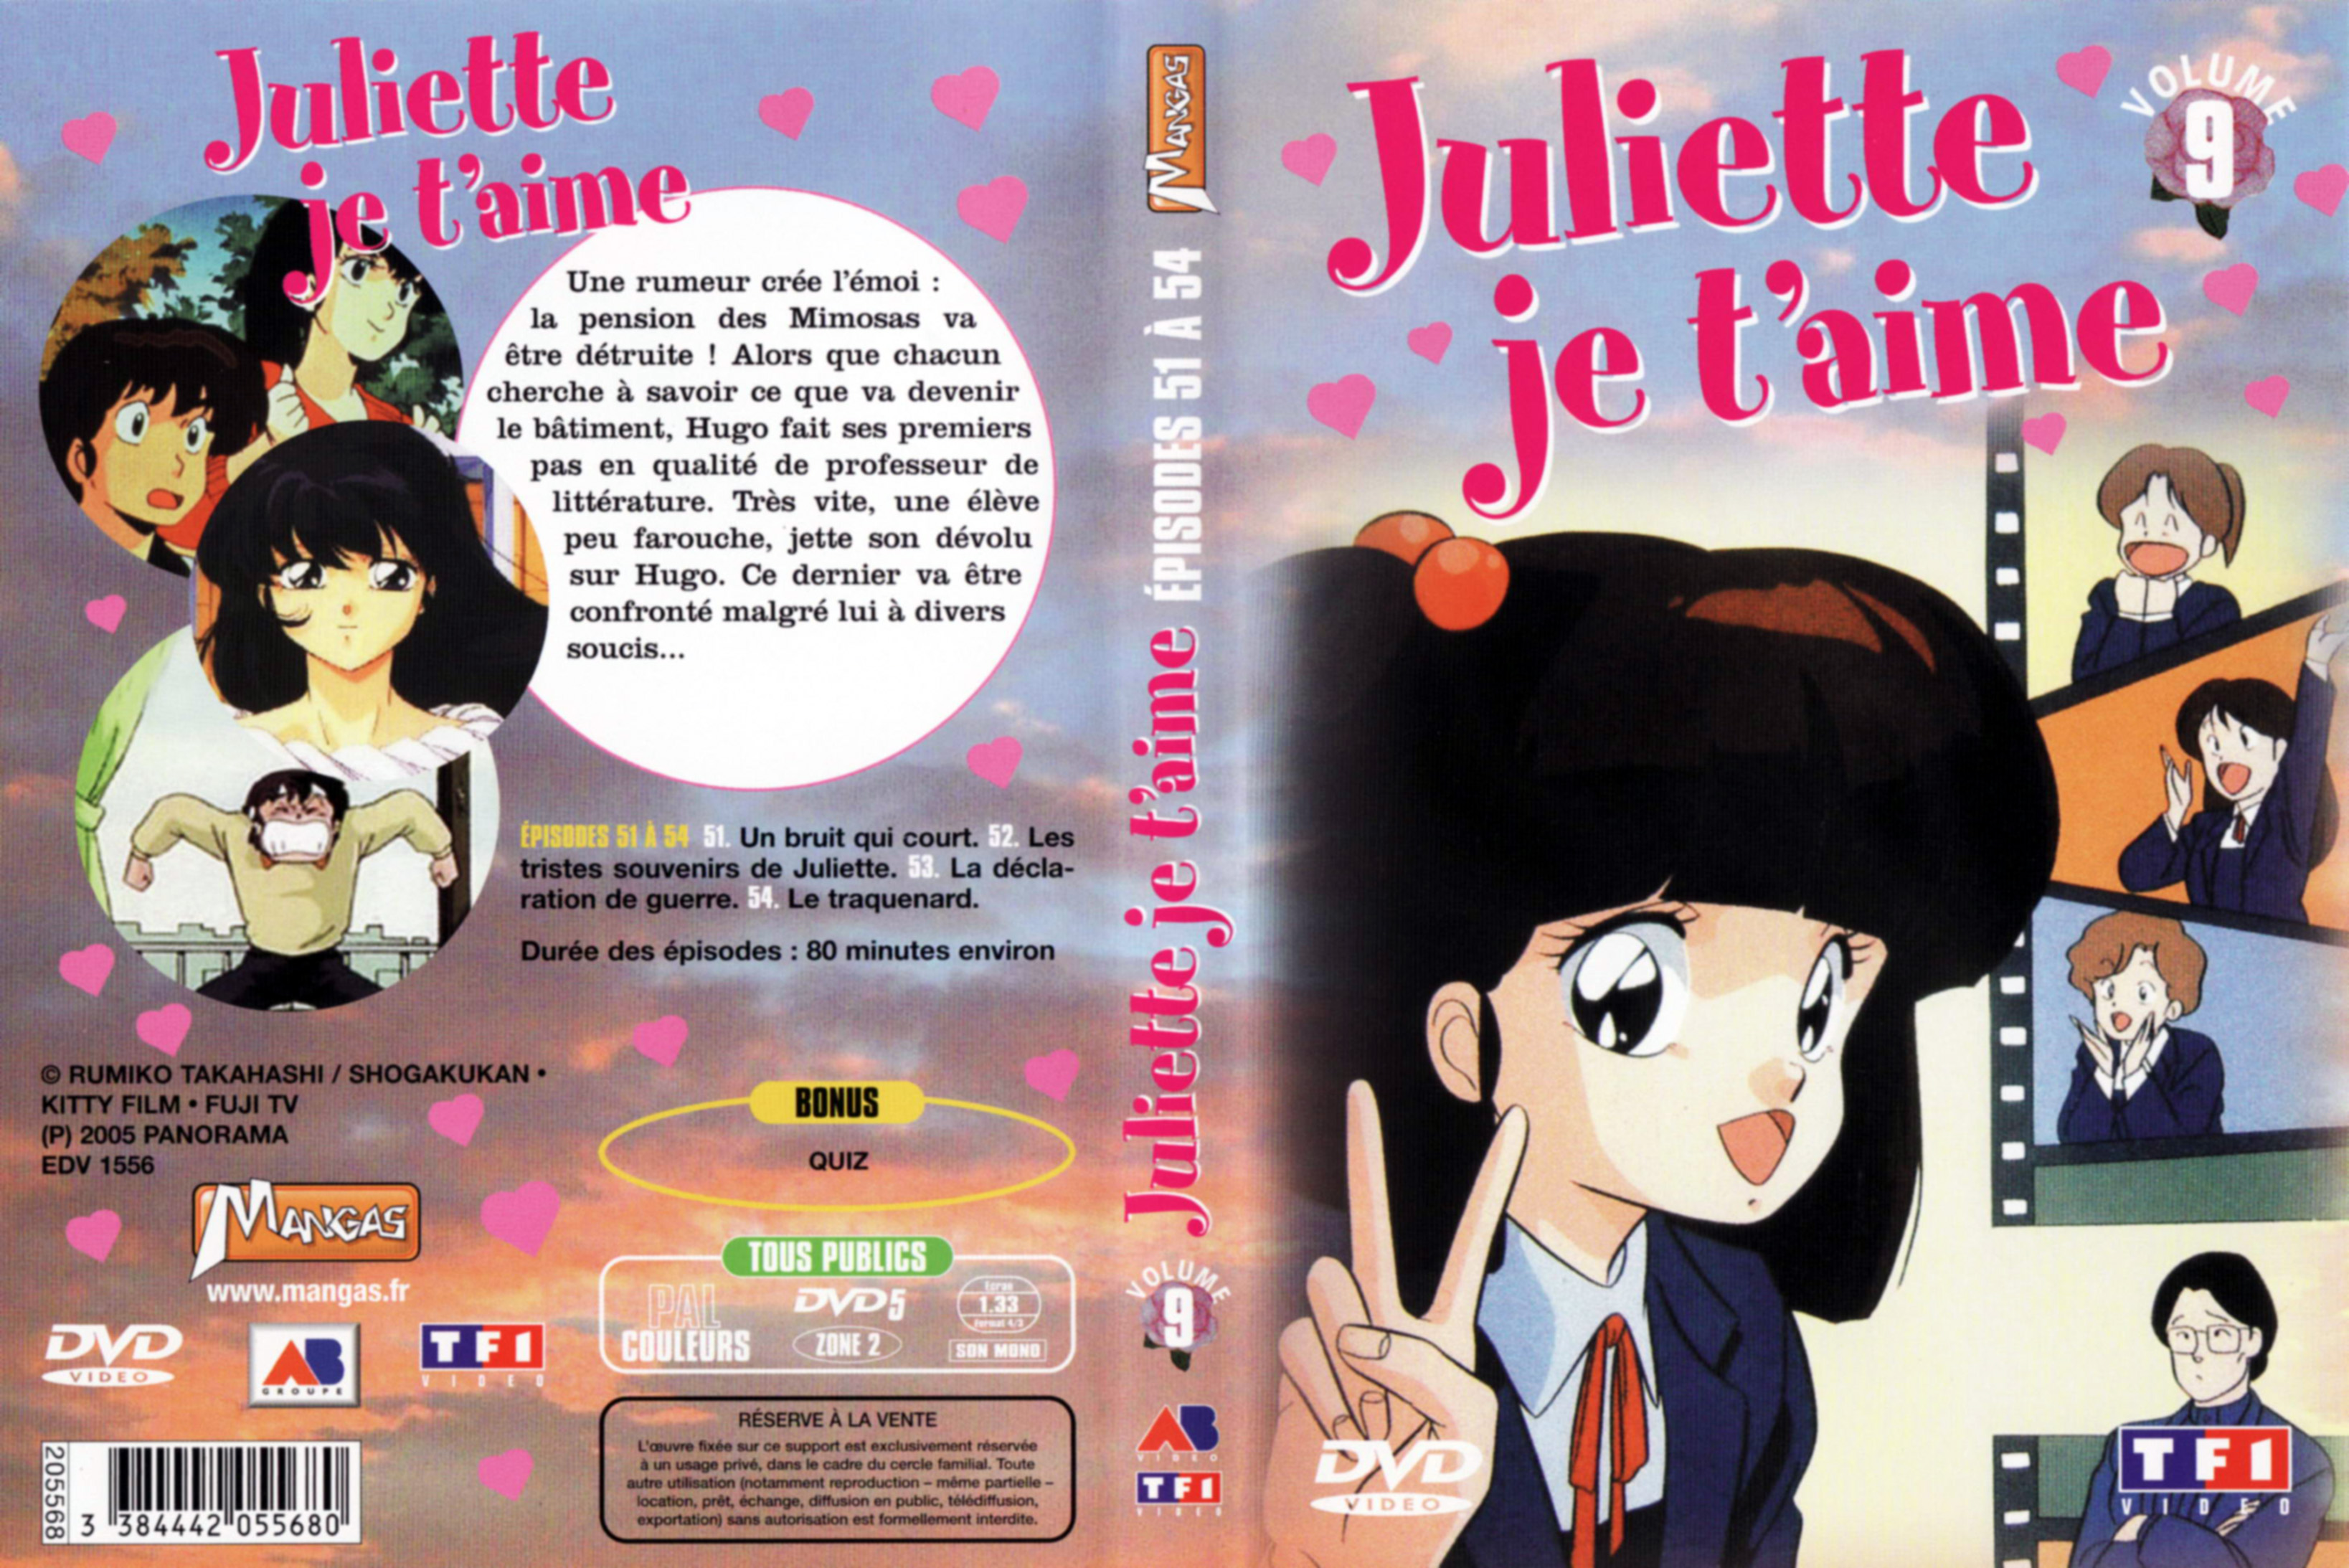 Jaquette DVD Juliette je t aime vol 09